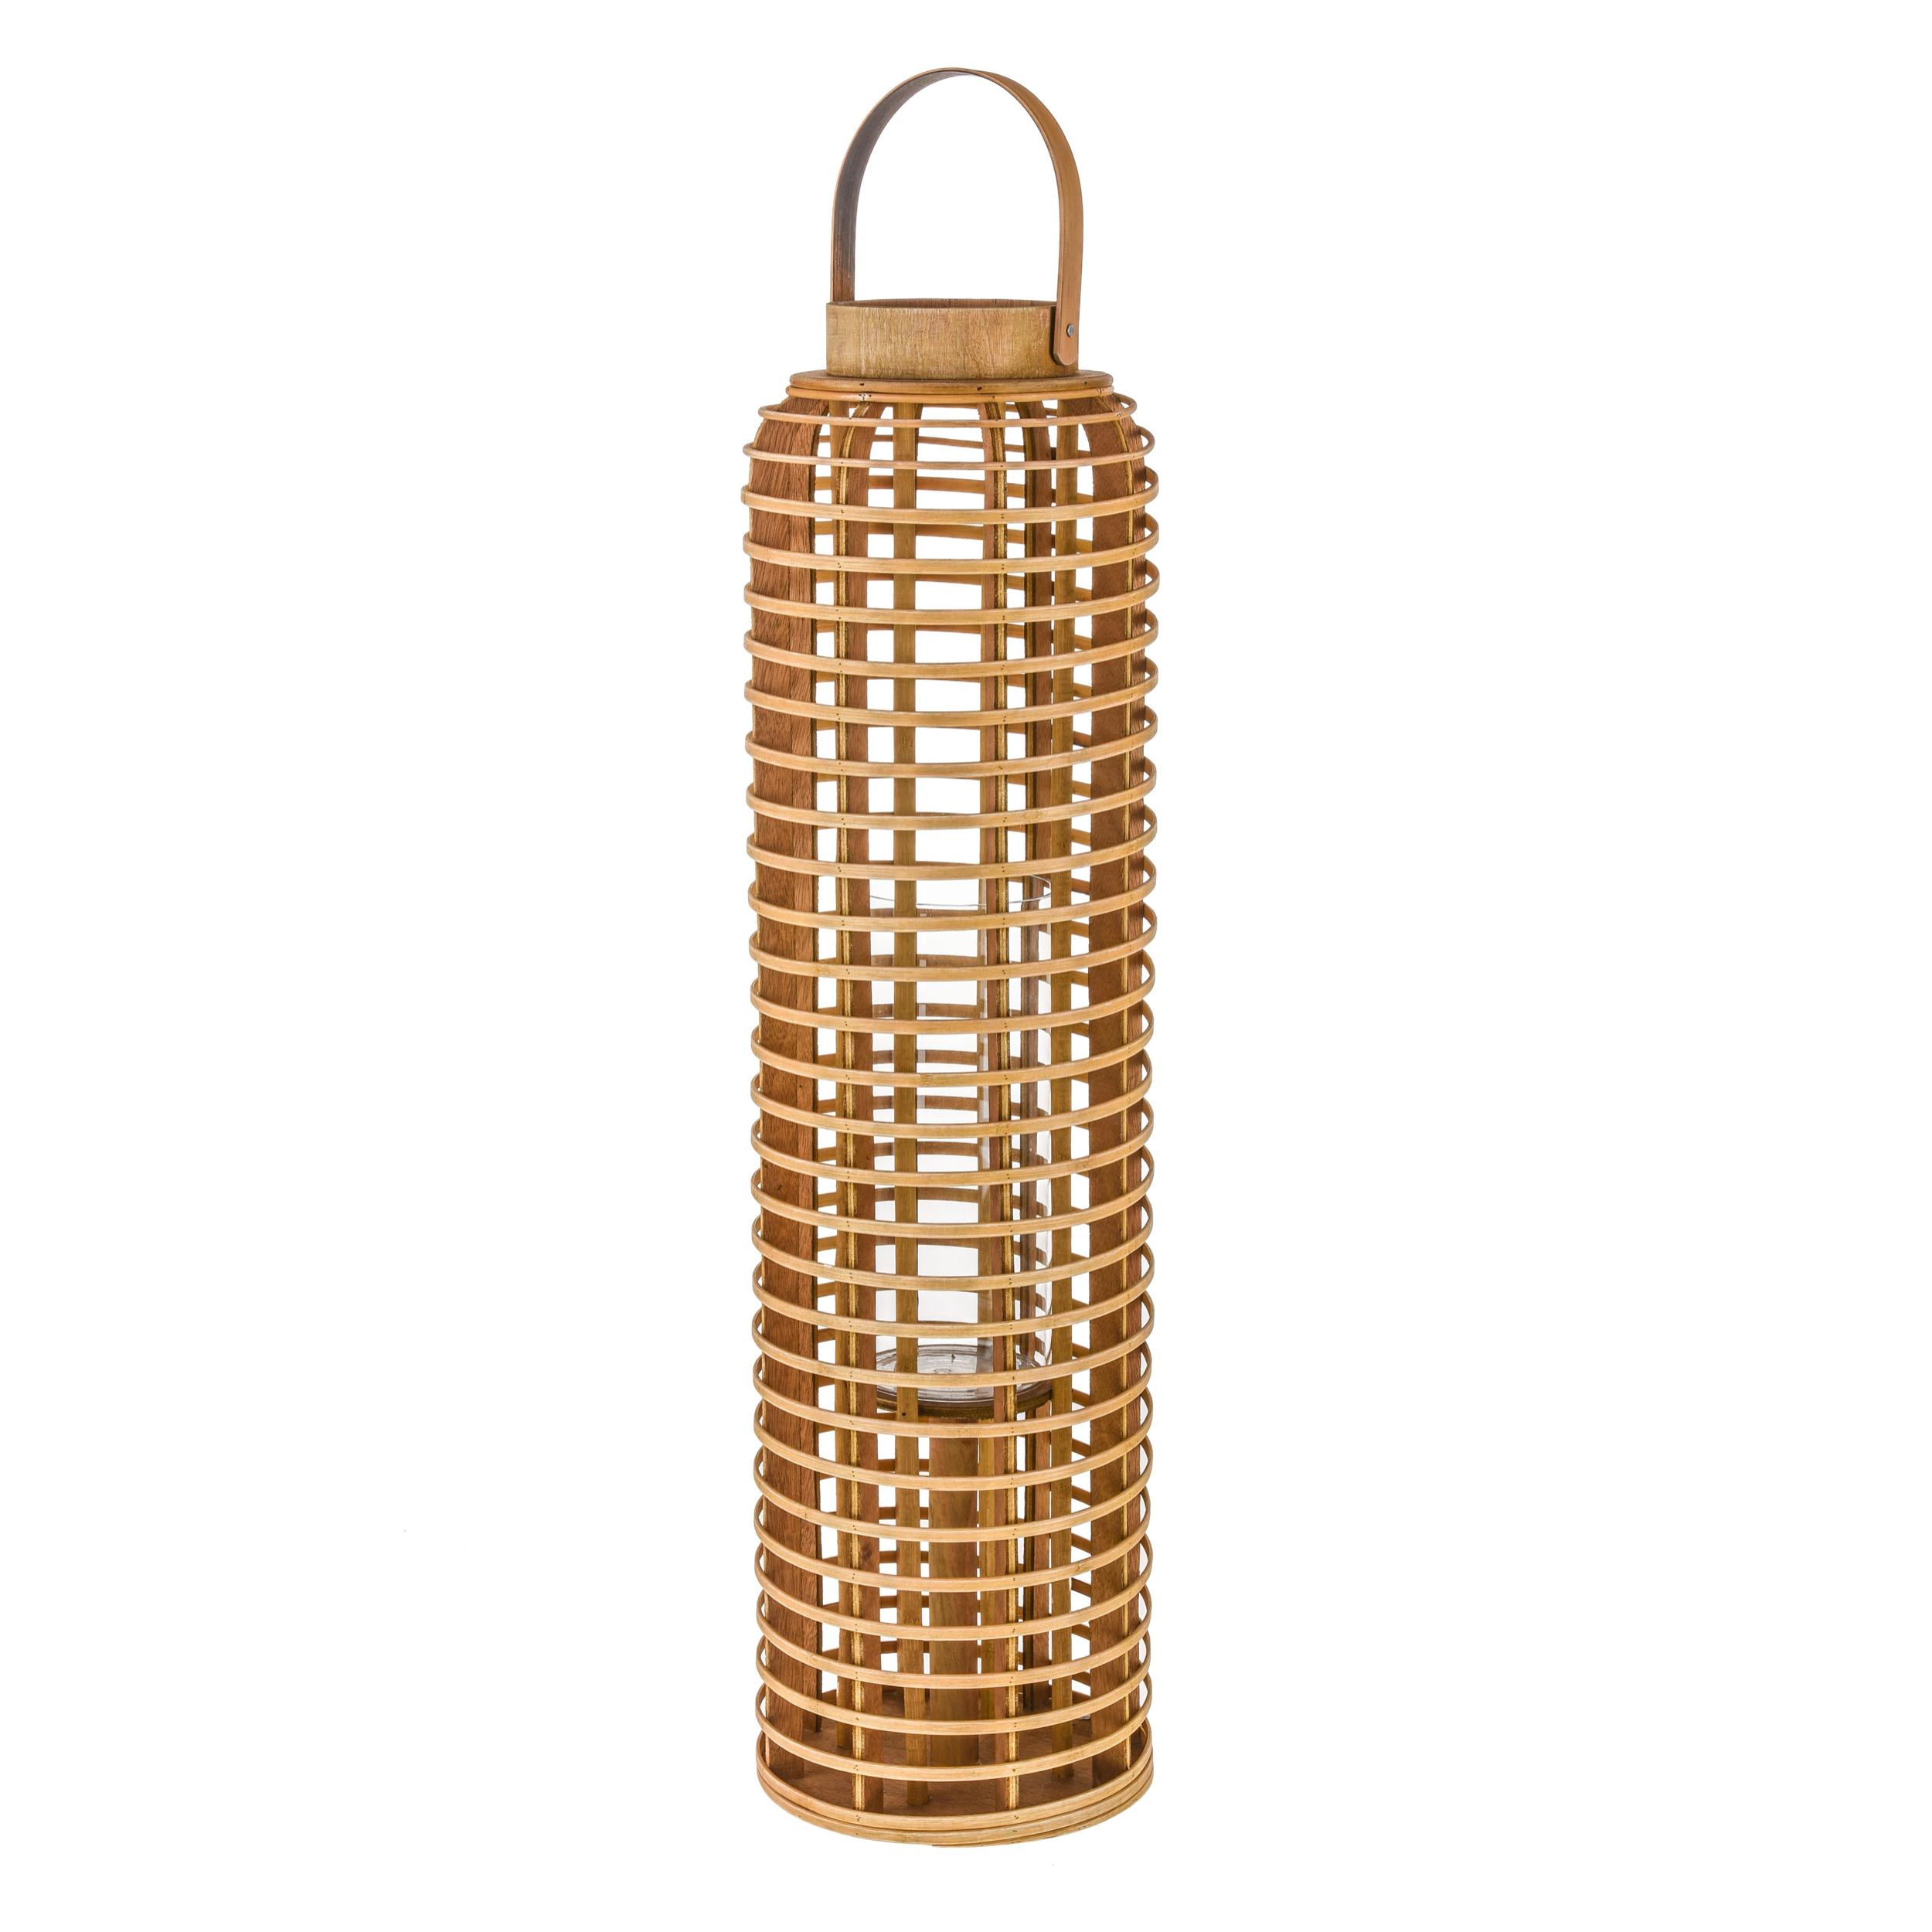 Lanterna In Bamboo H.75 Cm - Pezzi 1 - 20X75X20cm - Colore: Altro - Bianchi Dino - Decori Casa E Complementi